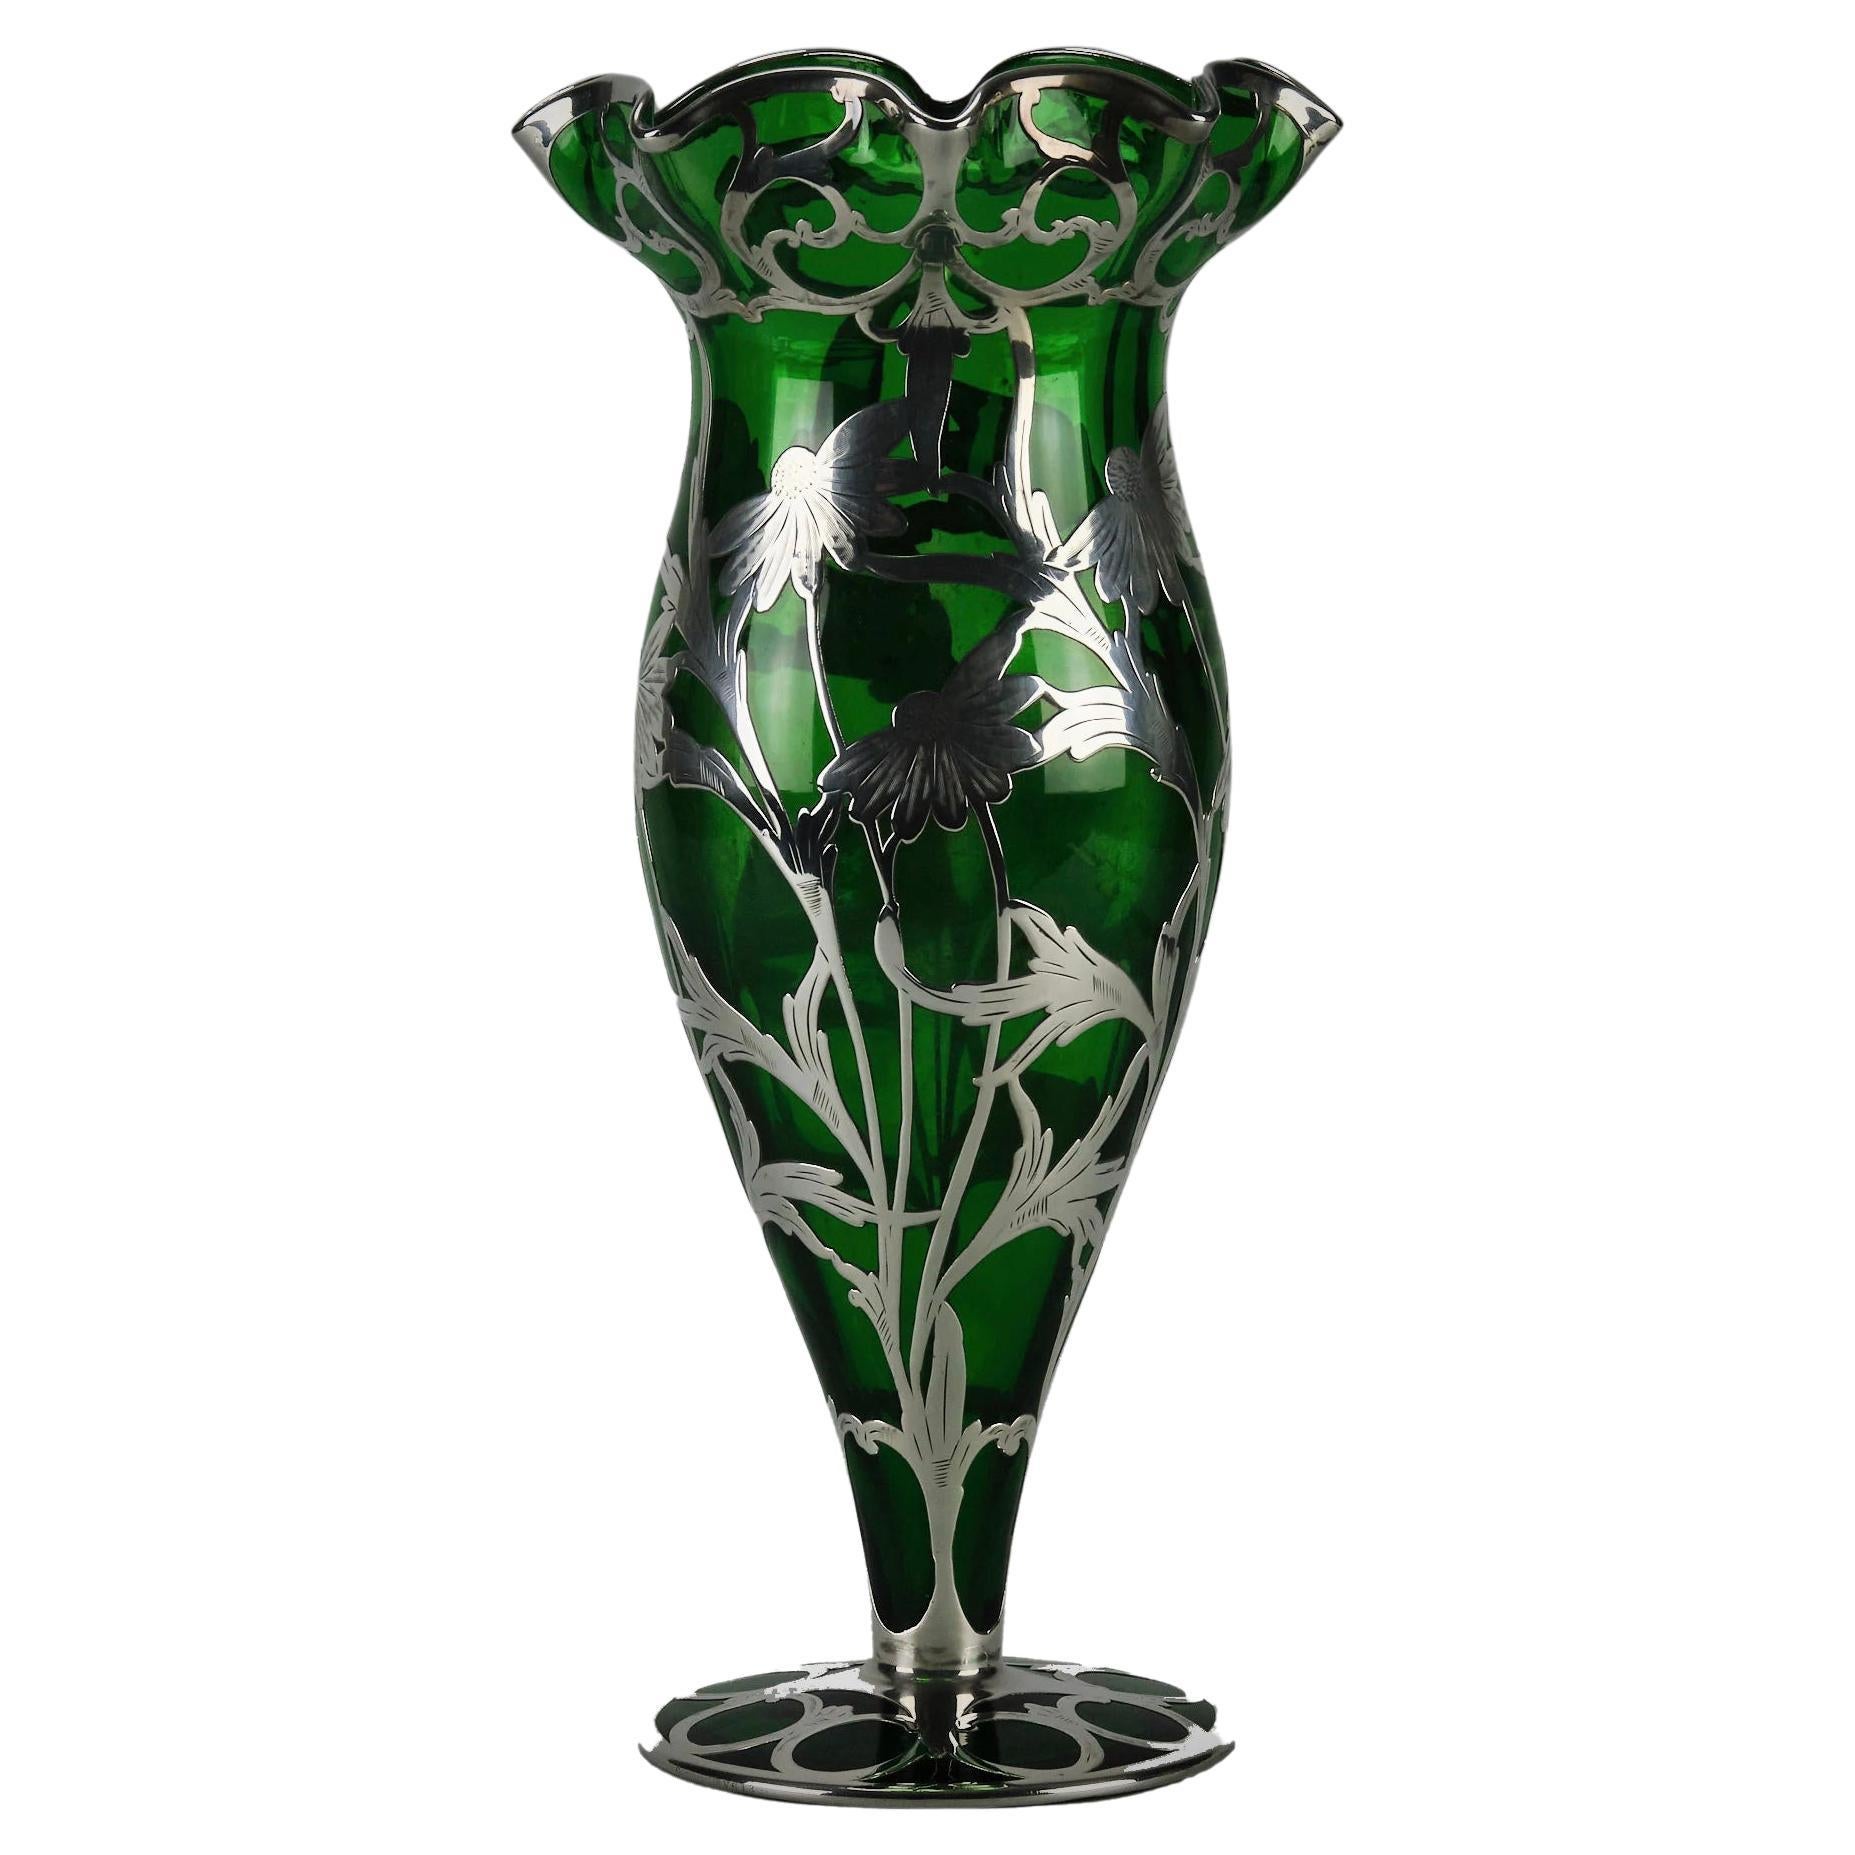 “Art Nouveau Vase’ by the Alvin Corporation, circa 1920